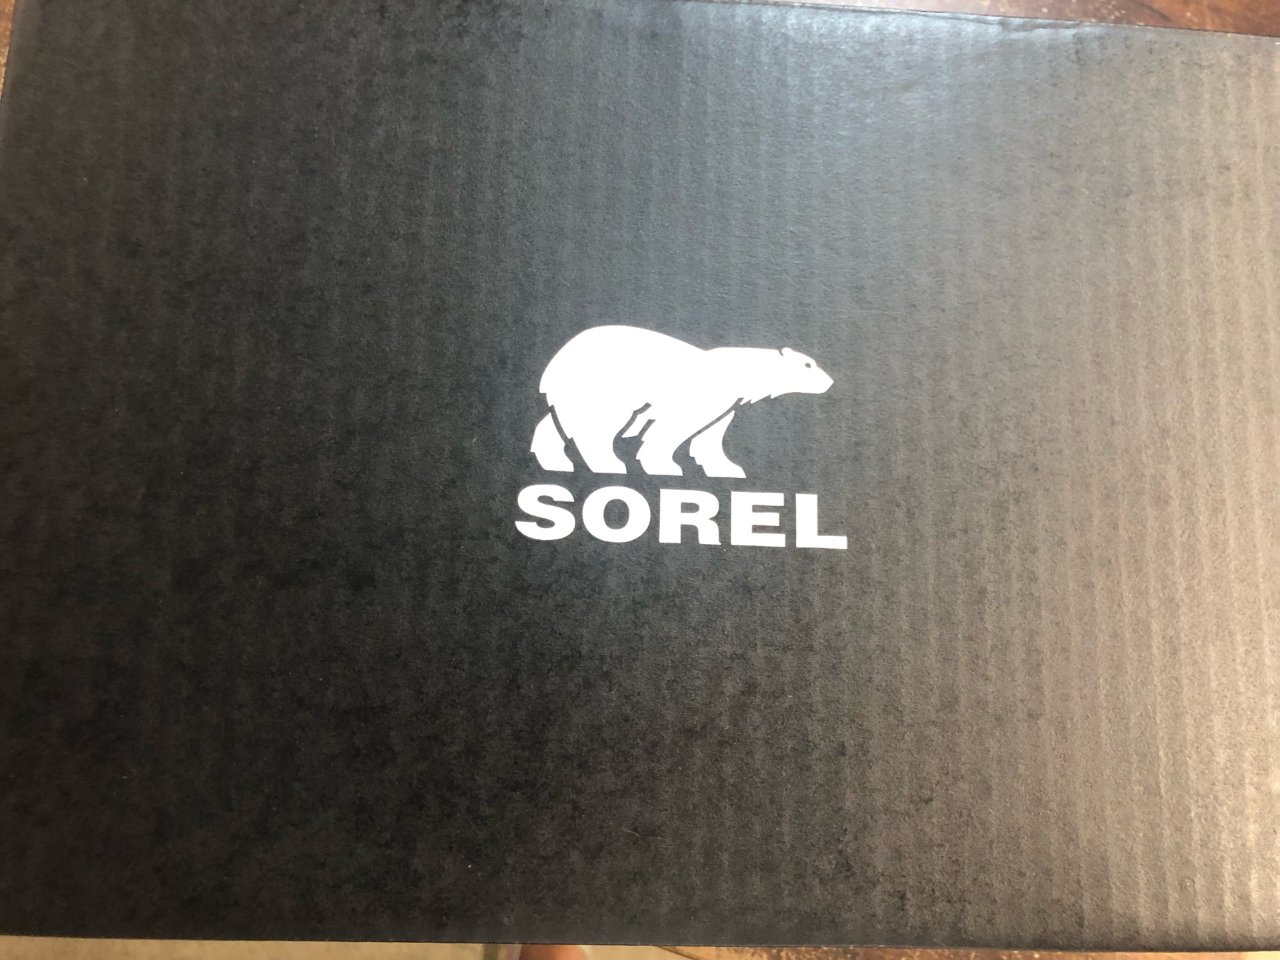 Sorel运动凉鞋